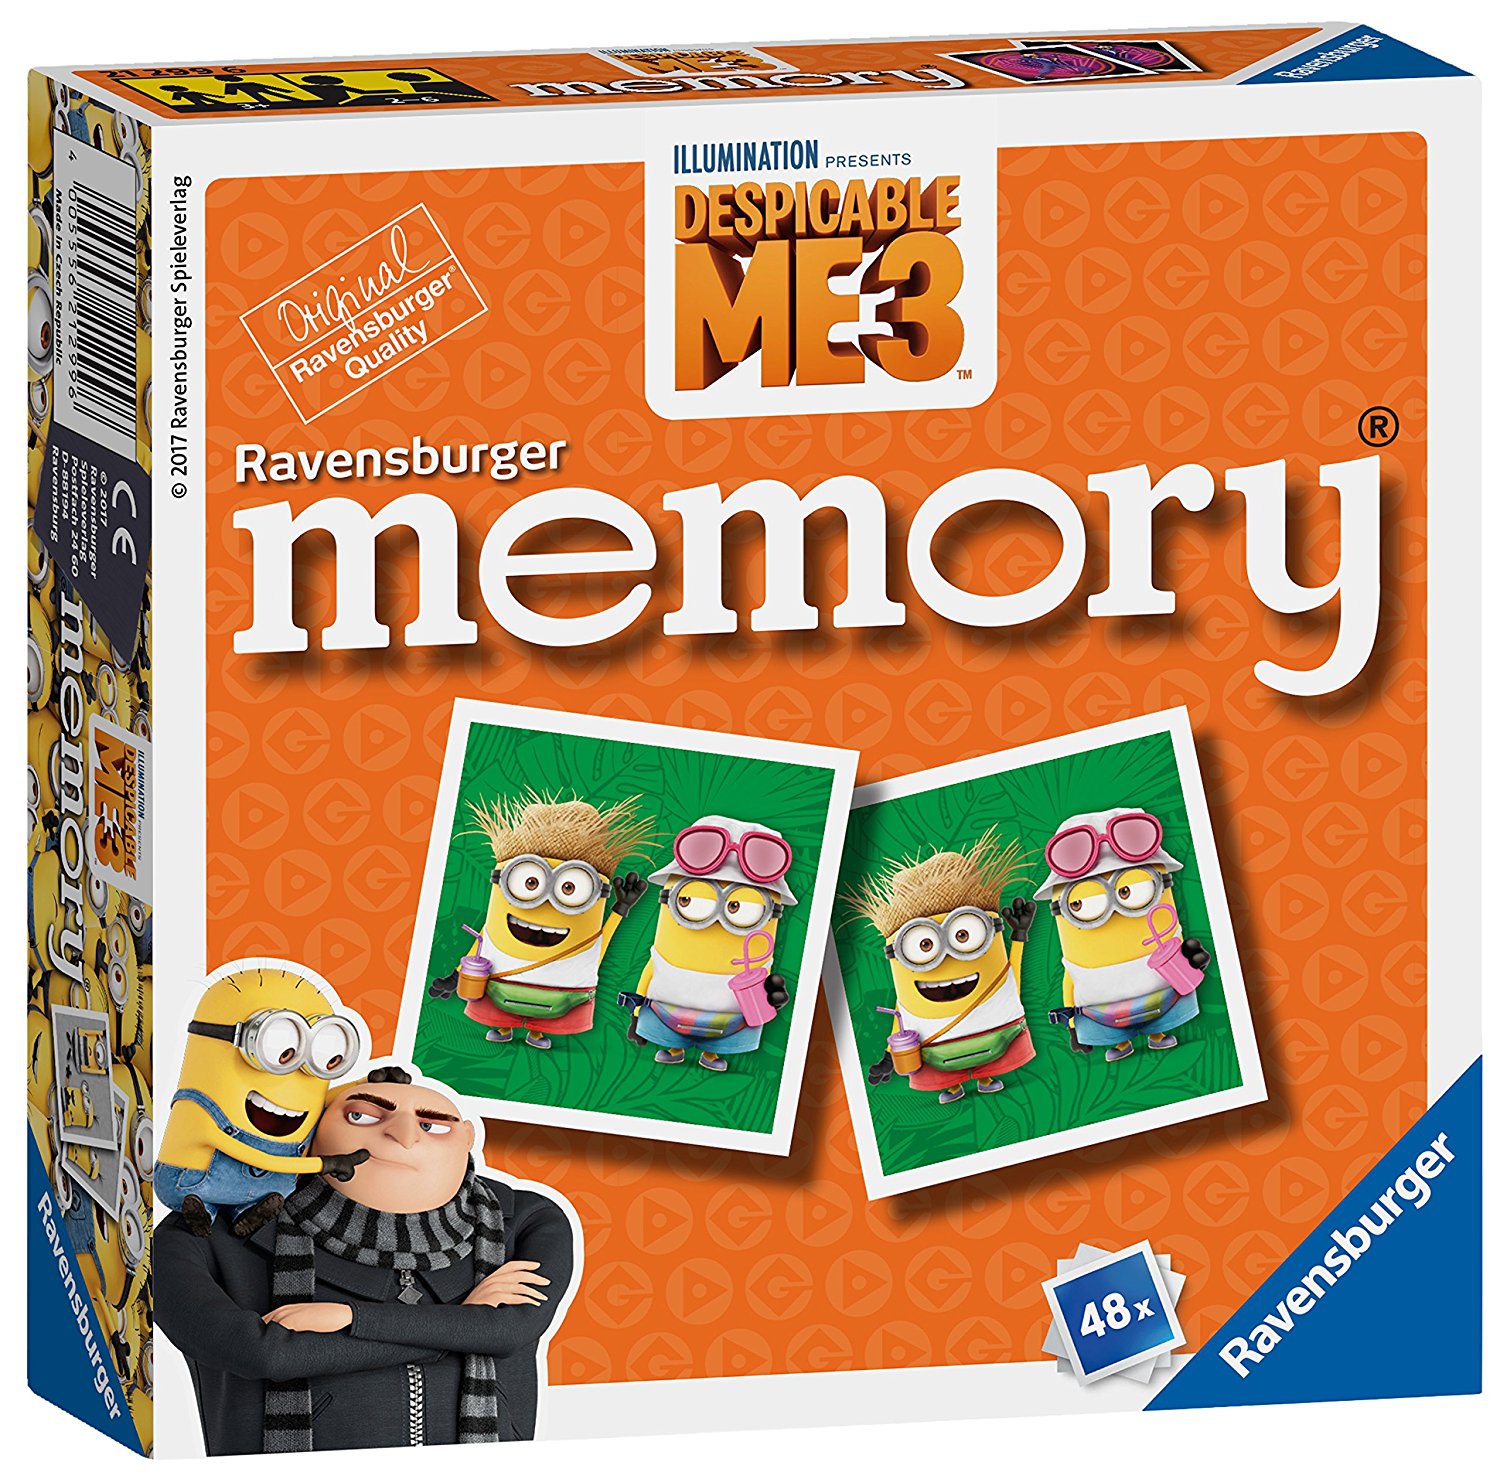 Despicable Me 3 'Minions' Mini Memory Game Puzzle